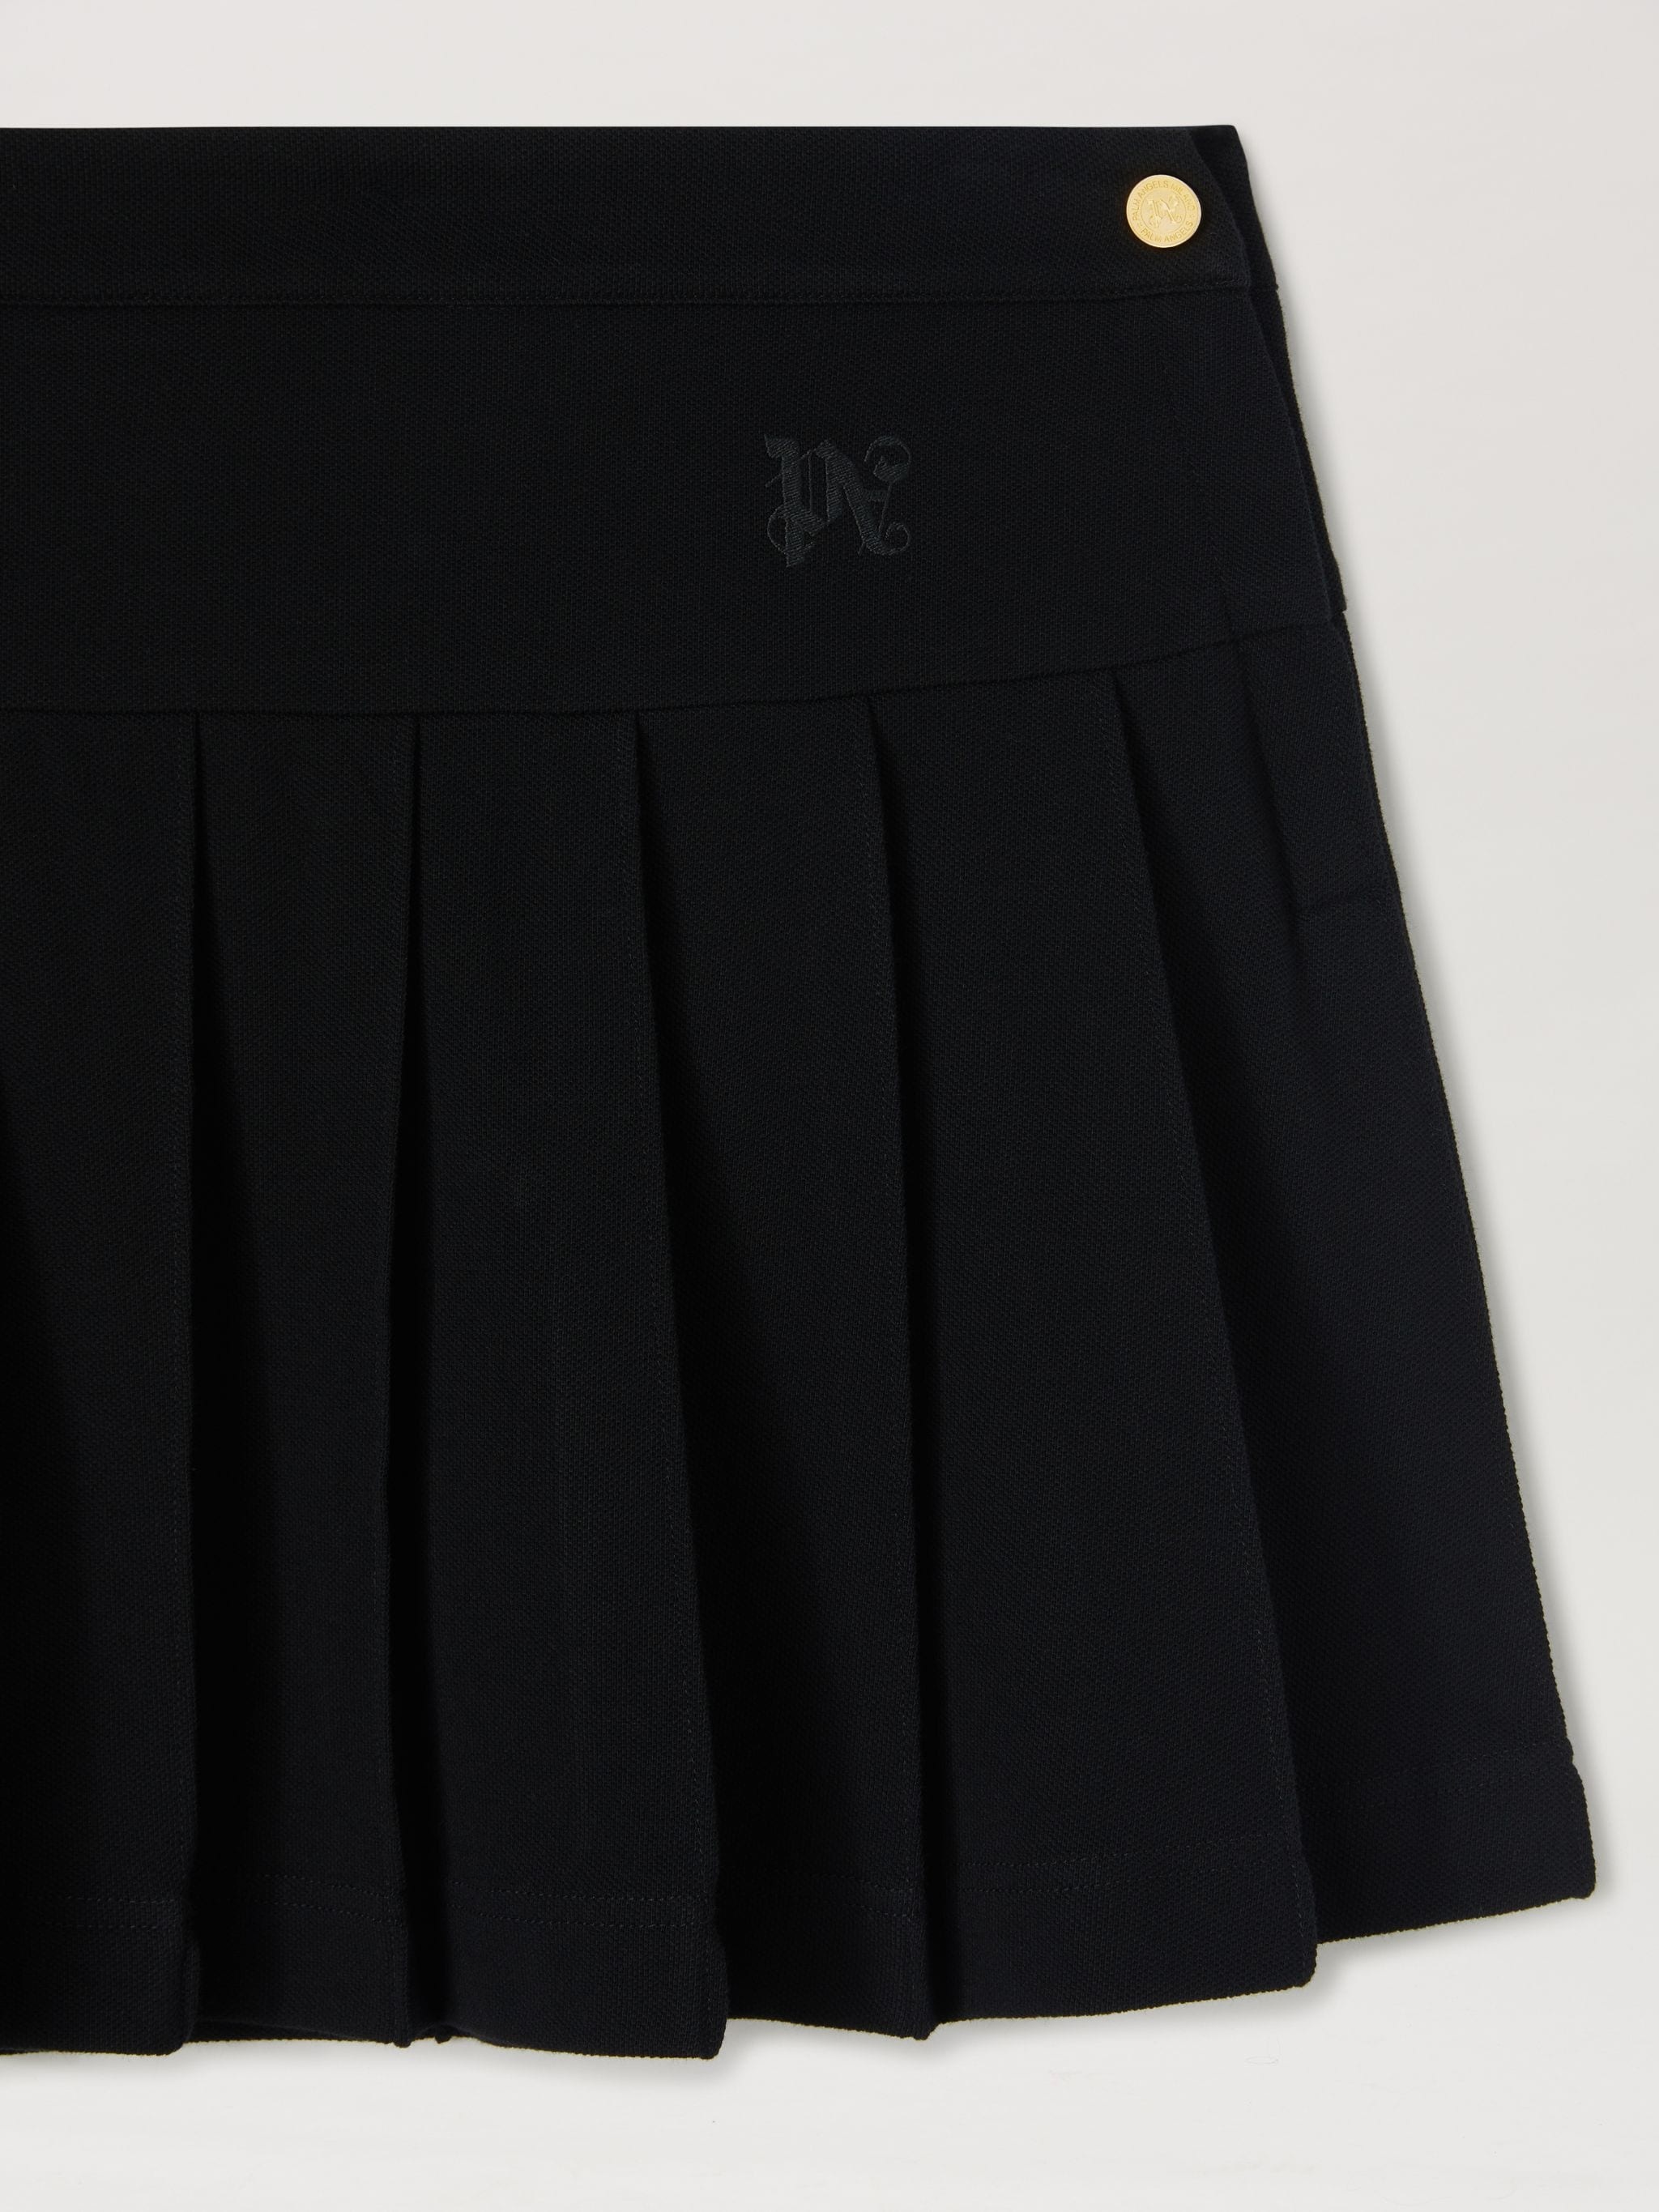 Monogram Pleated Skirt - 3